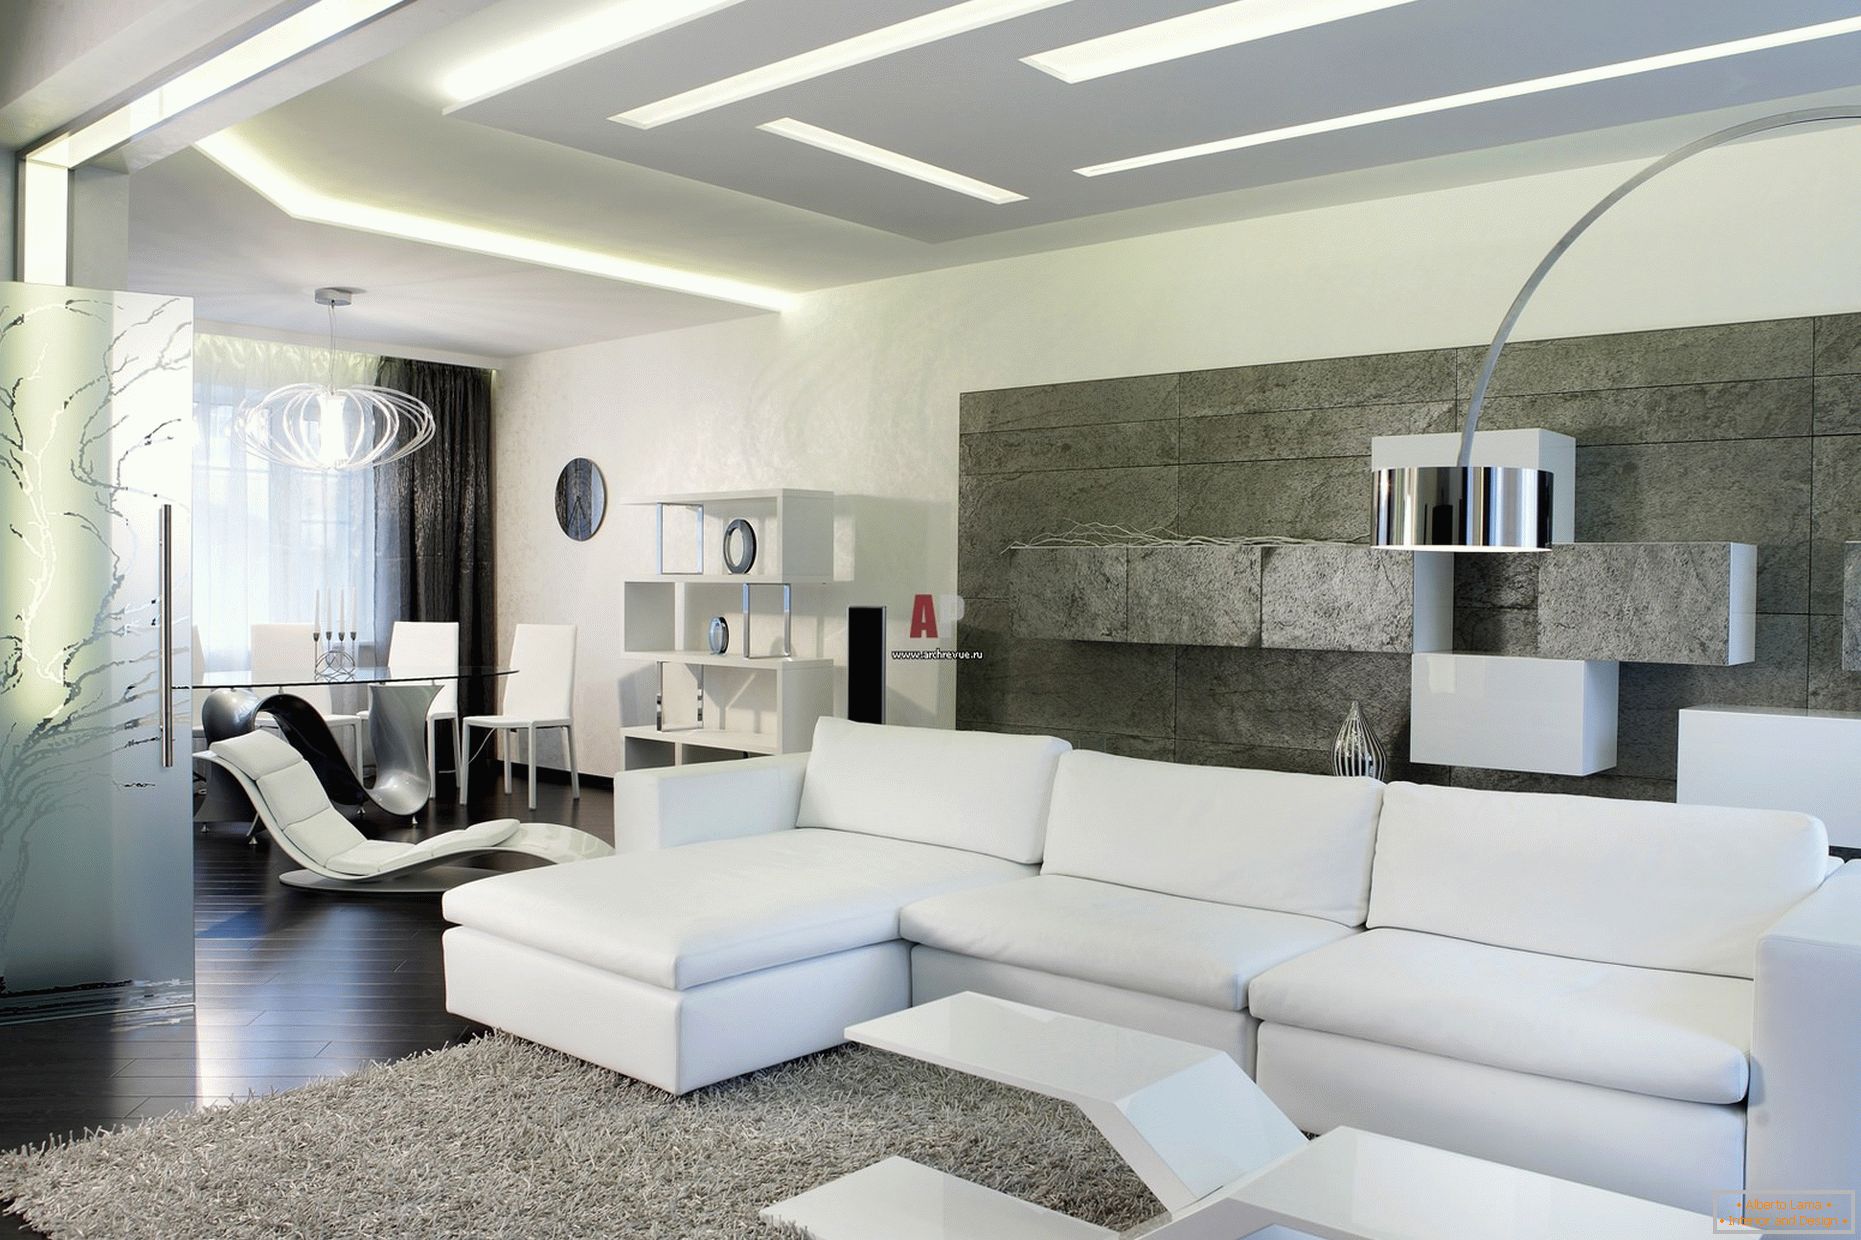 Bela notranjost gostov v sobi v minimalističnem slogu je pomembna za sodoben, krepko oblikovan dizajn z namigi visoke tehnologije.